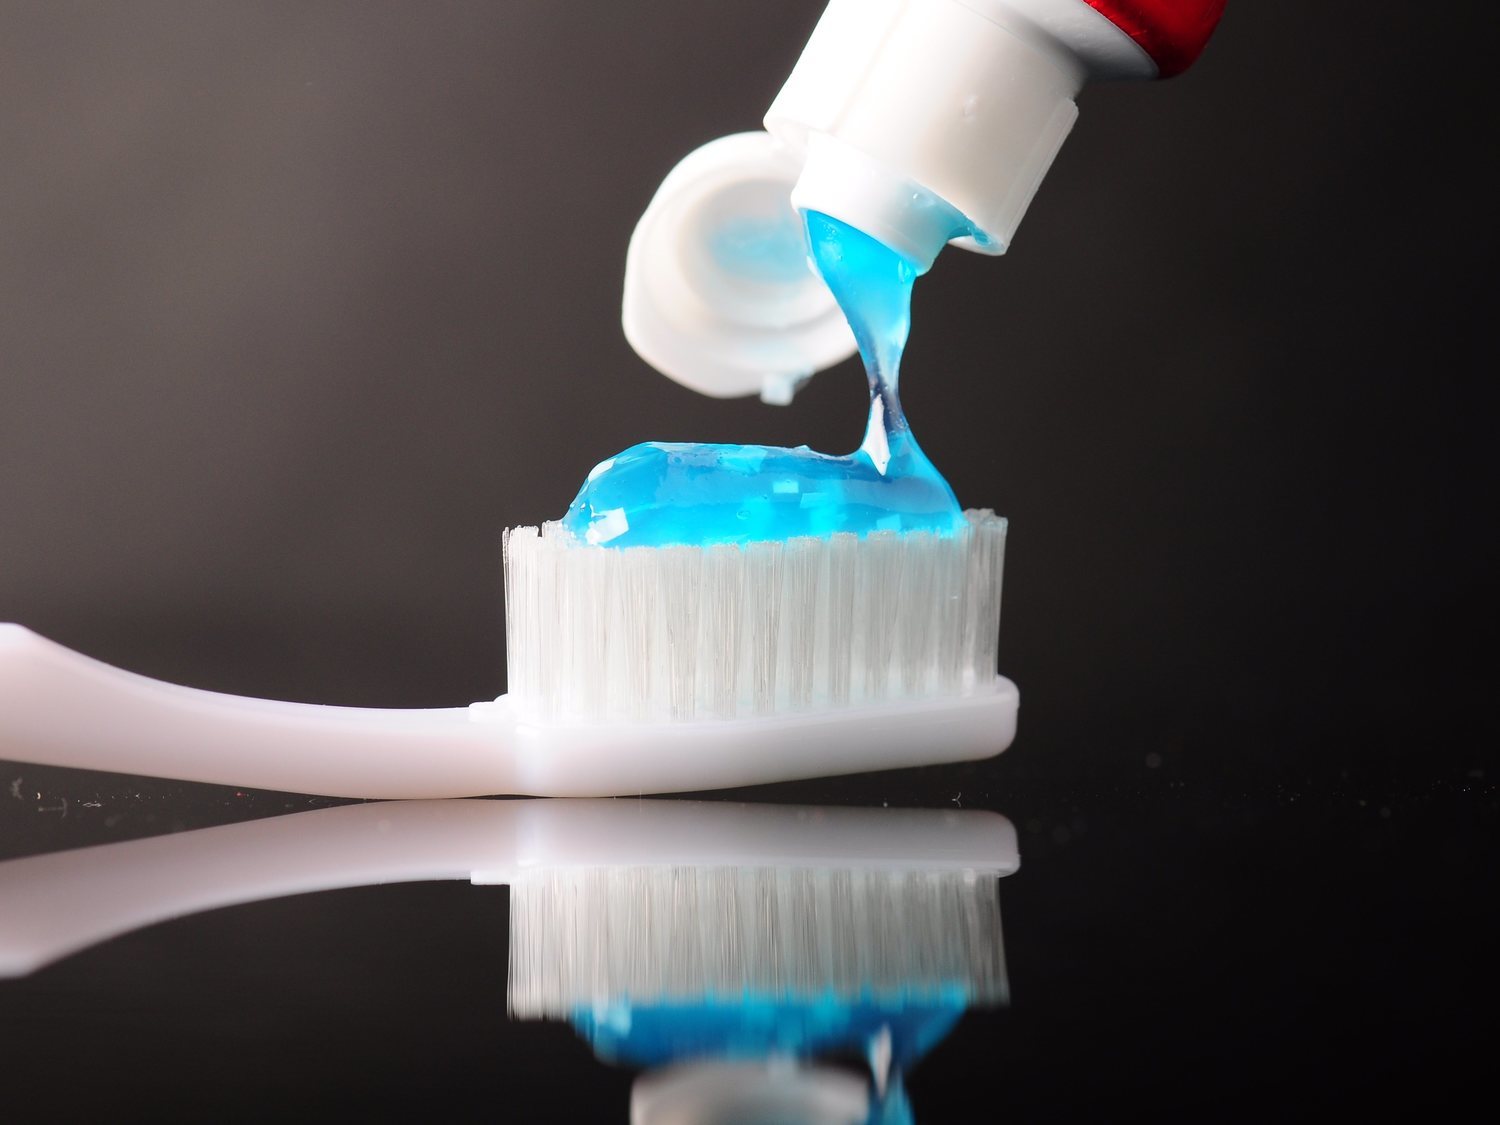 Cuidado: este famoso 'dentífrico' puede producir daños en nuestros dientes y salud